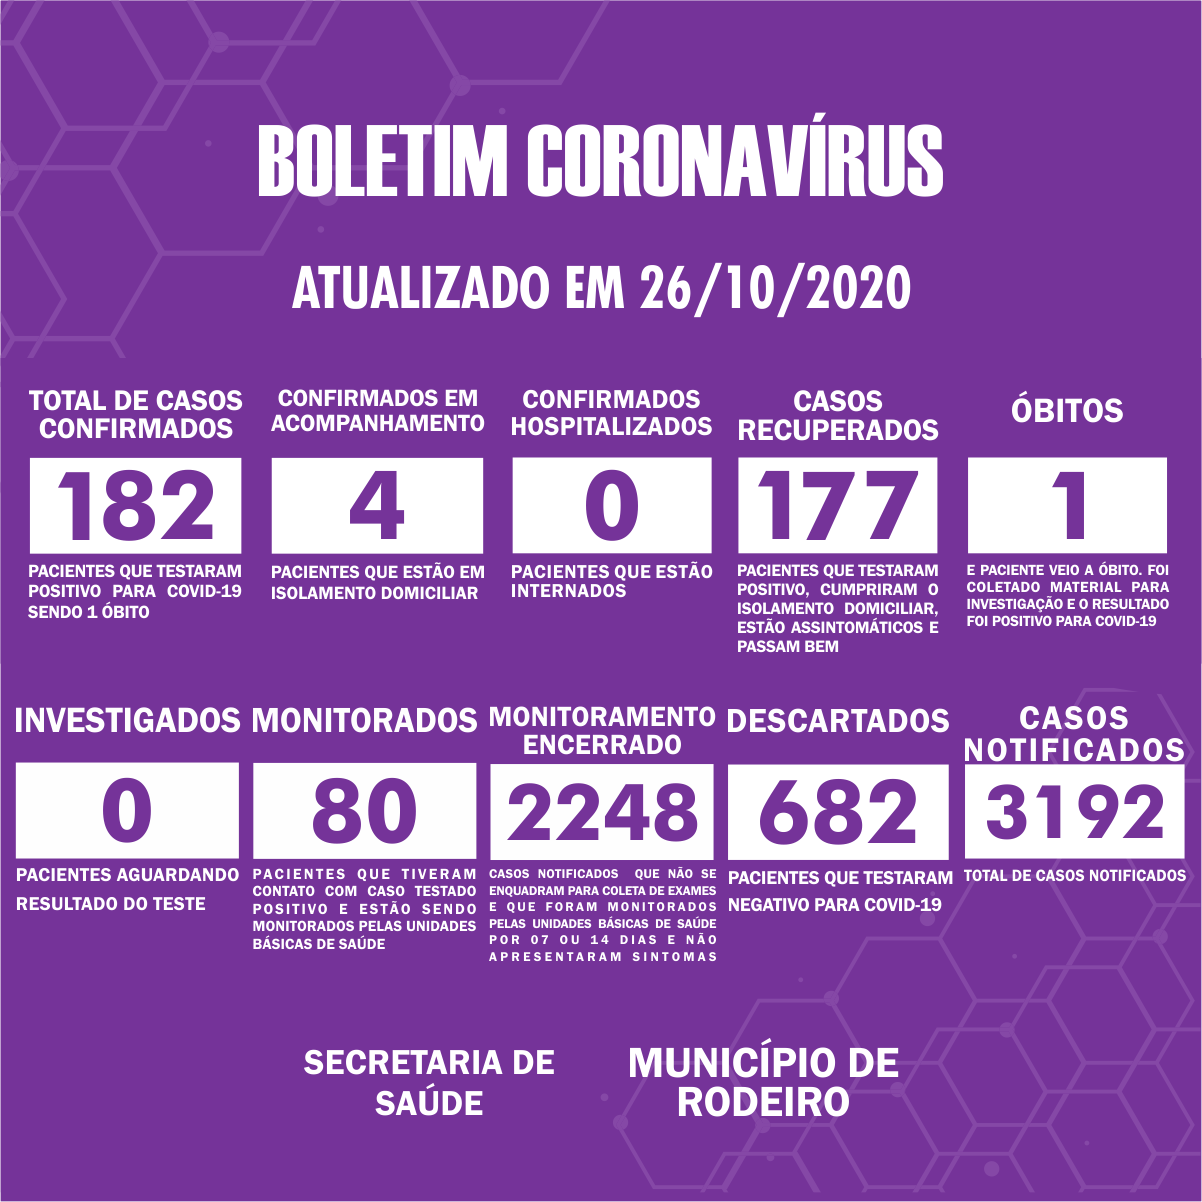 Boletim Epidemiológico do Município de Rodeiro sobre coronavírus, atualizado em 26/10/2020